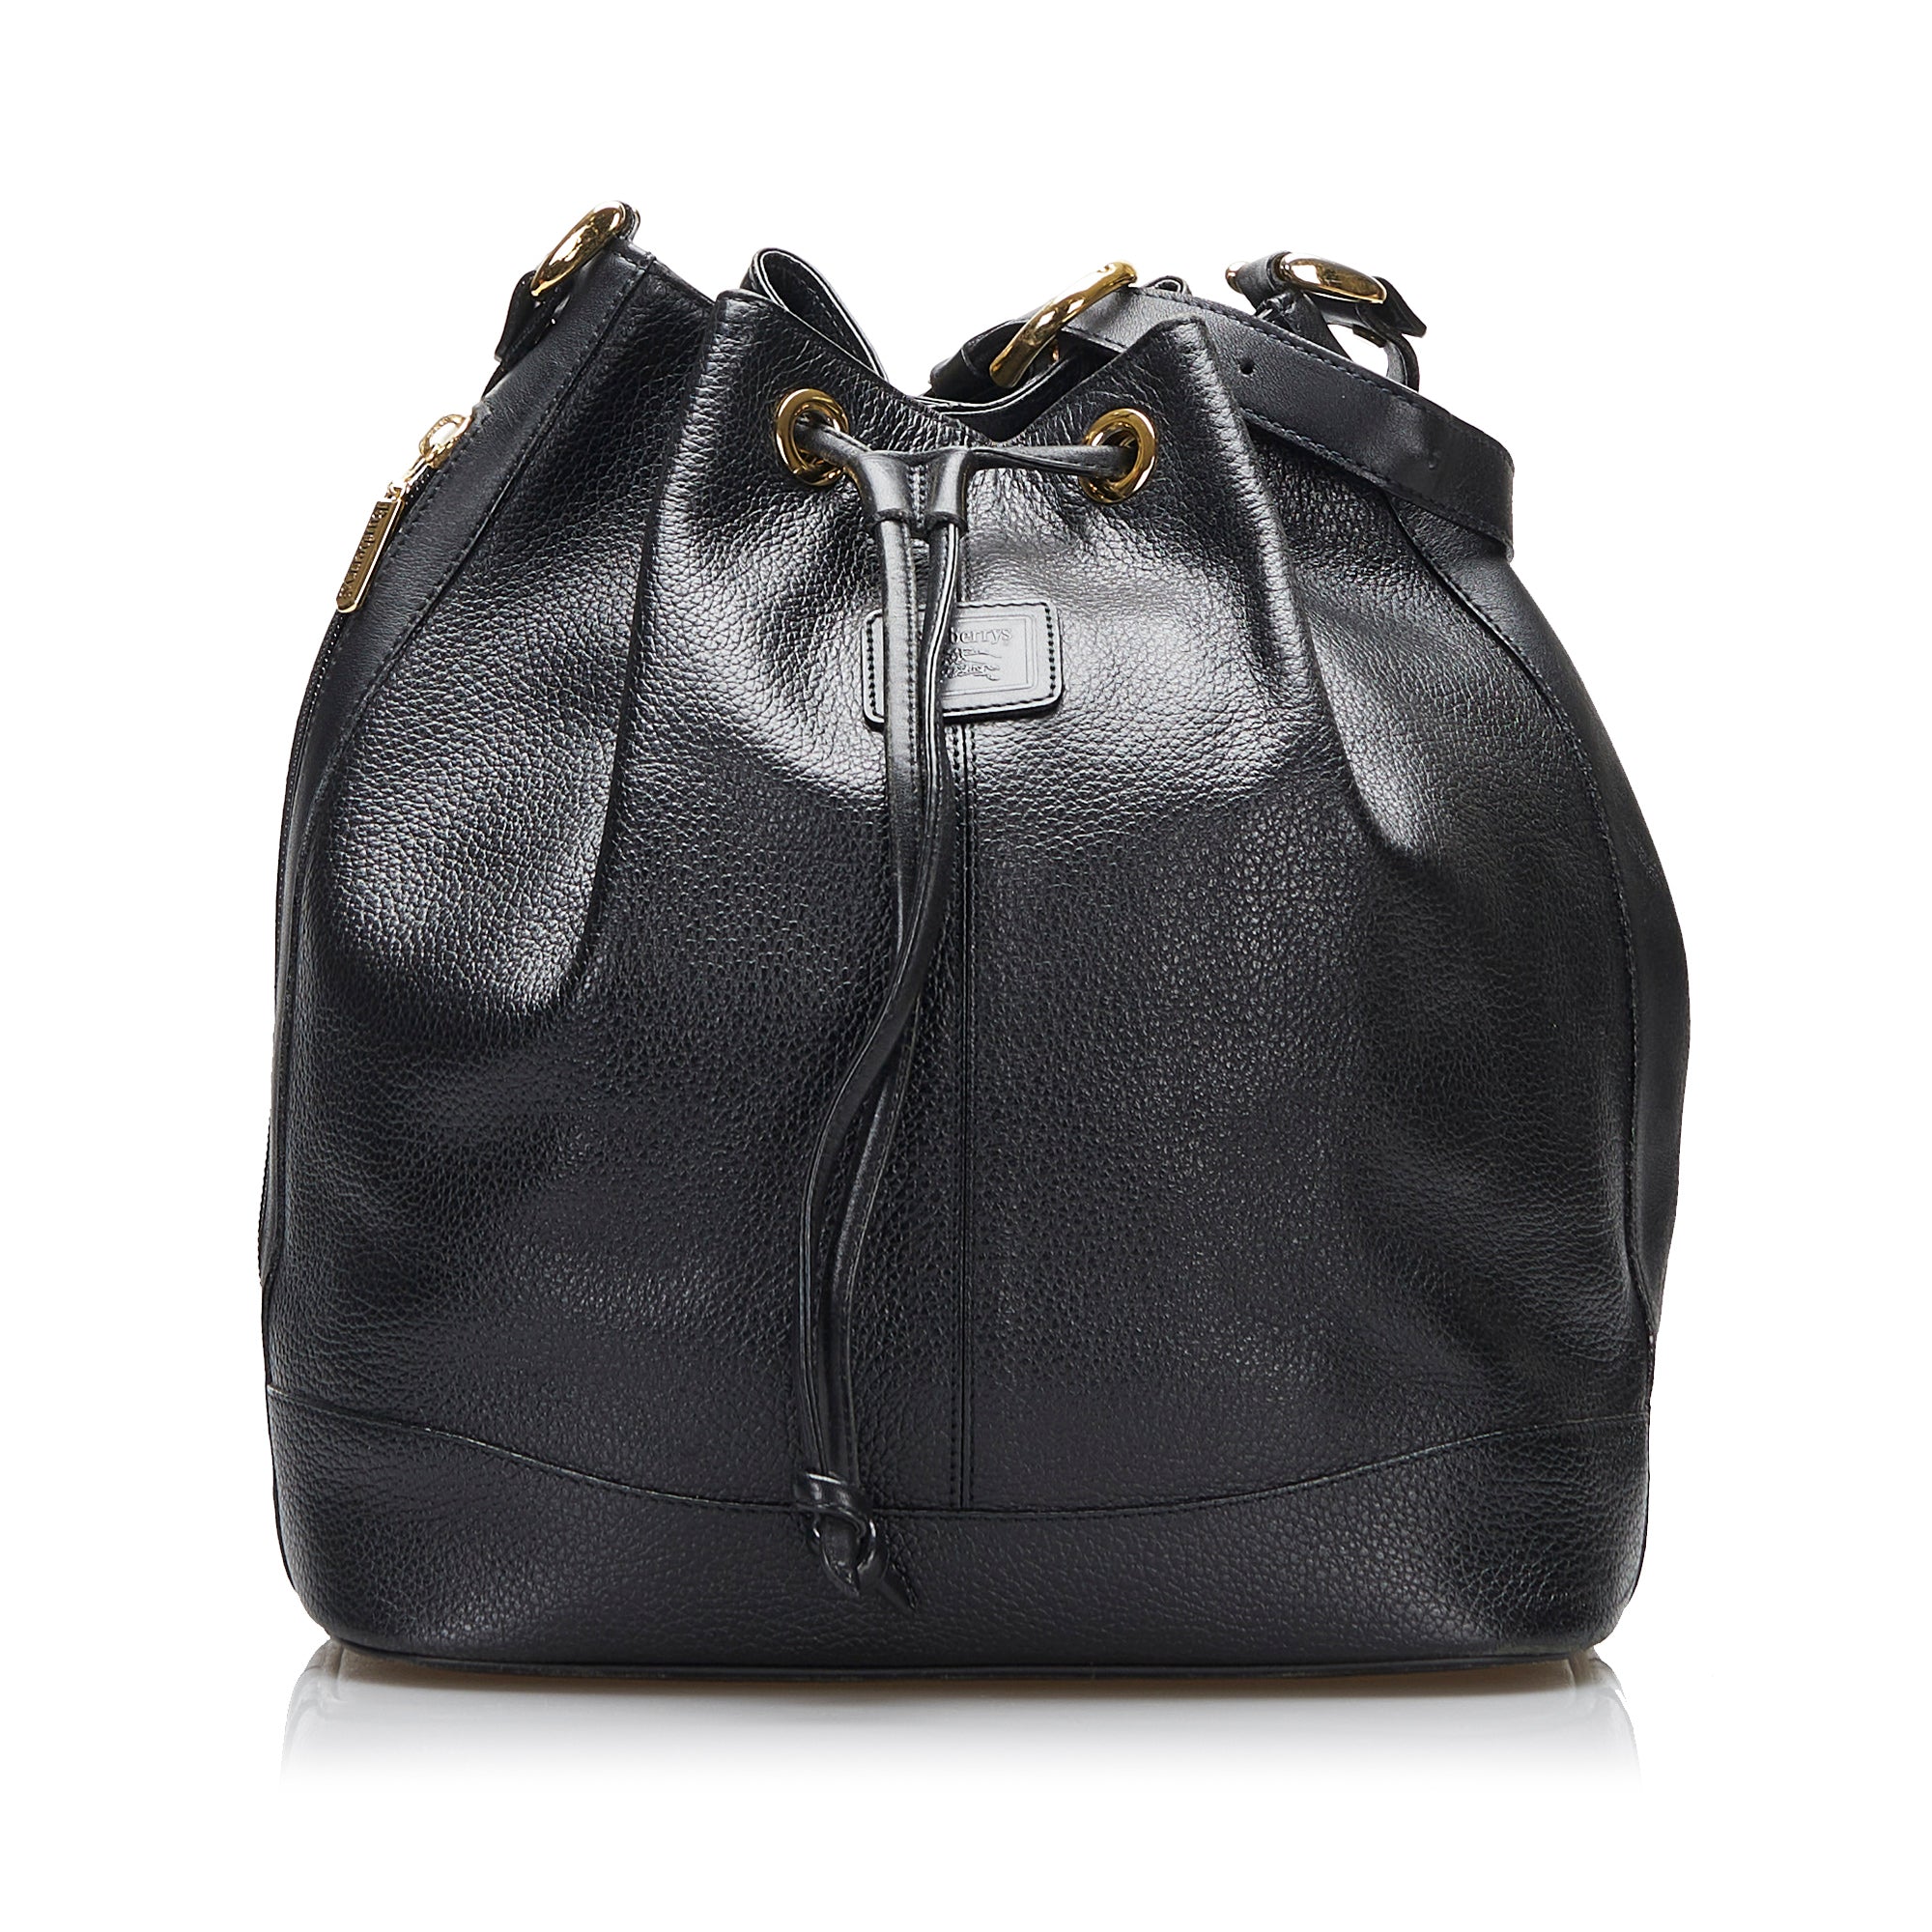 Black Burberry Leather Bag Designer Revival